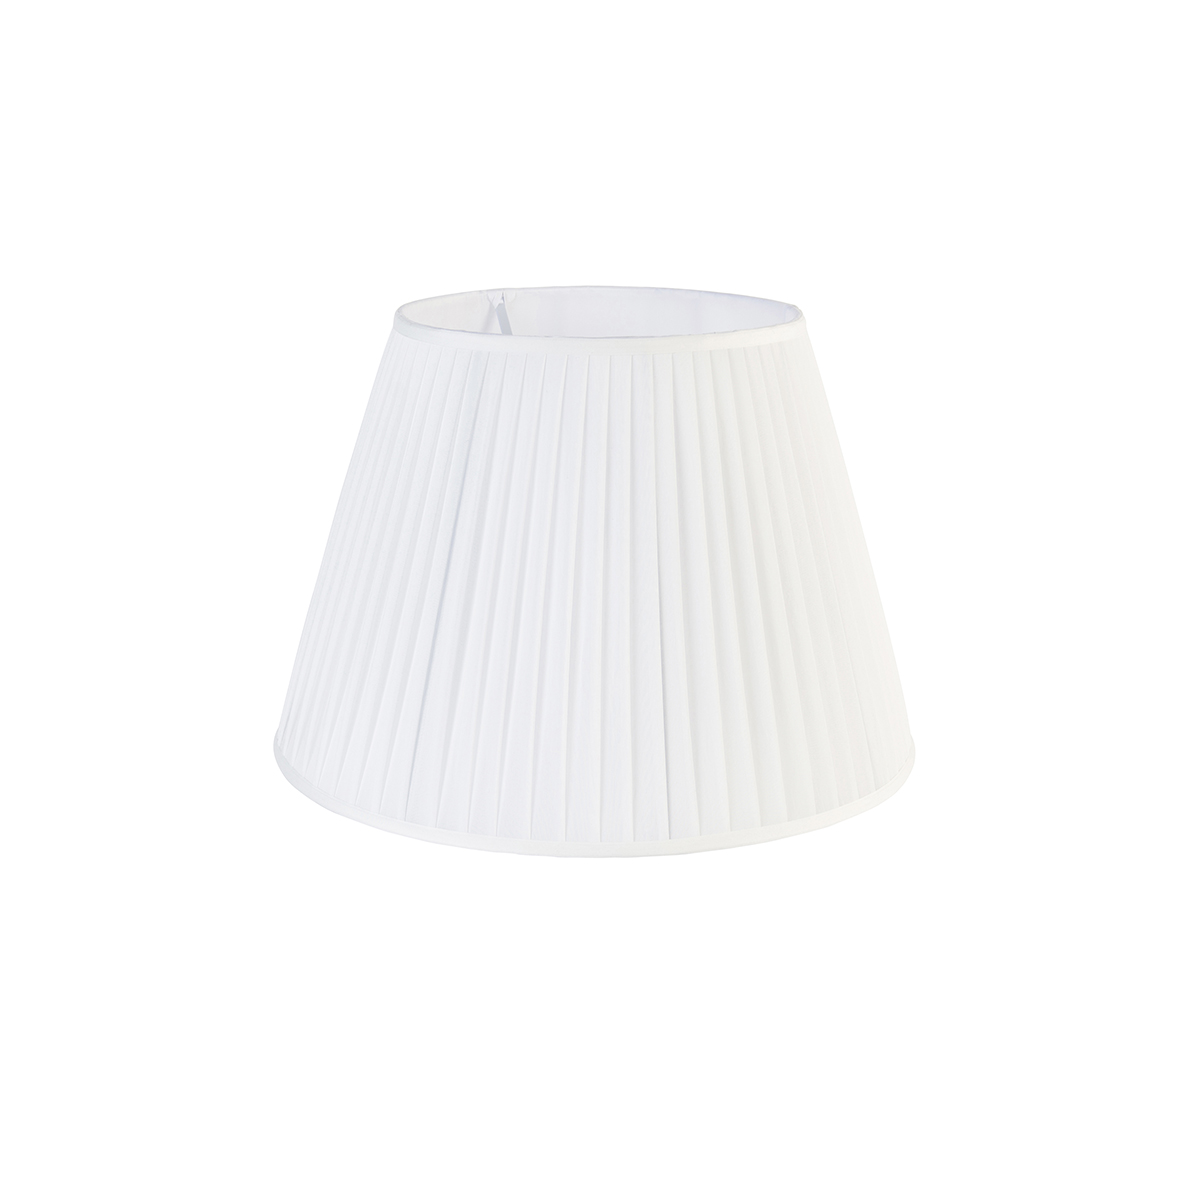 Plisse lámpaernyő fehér 45/30 cm